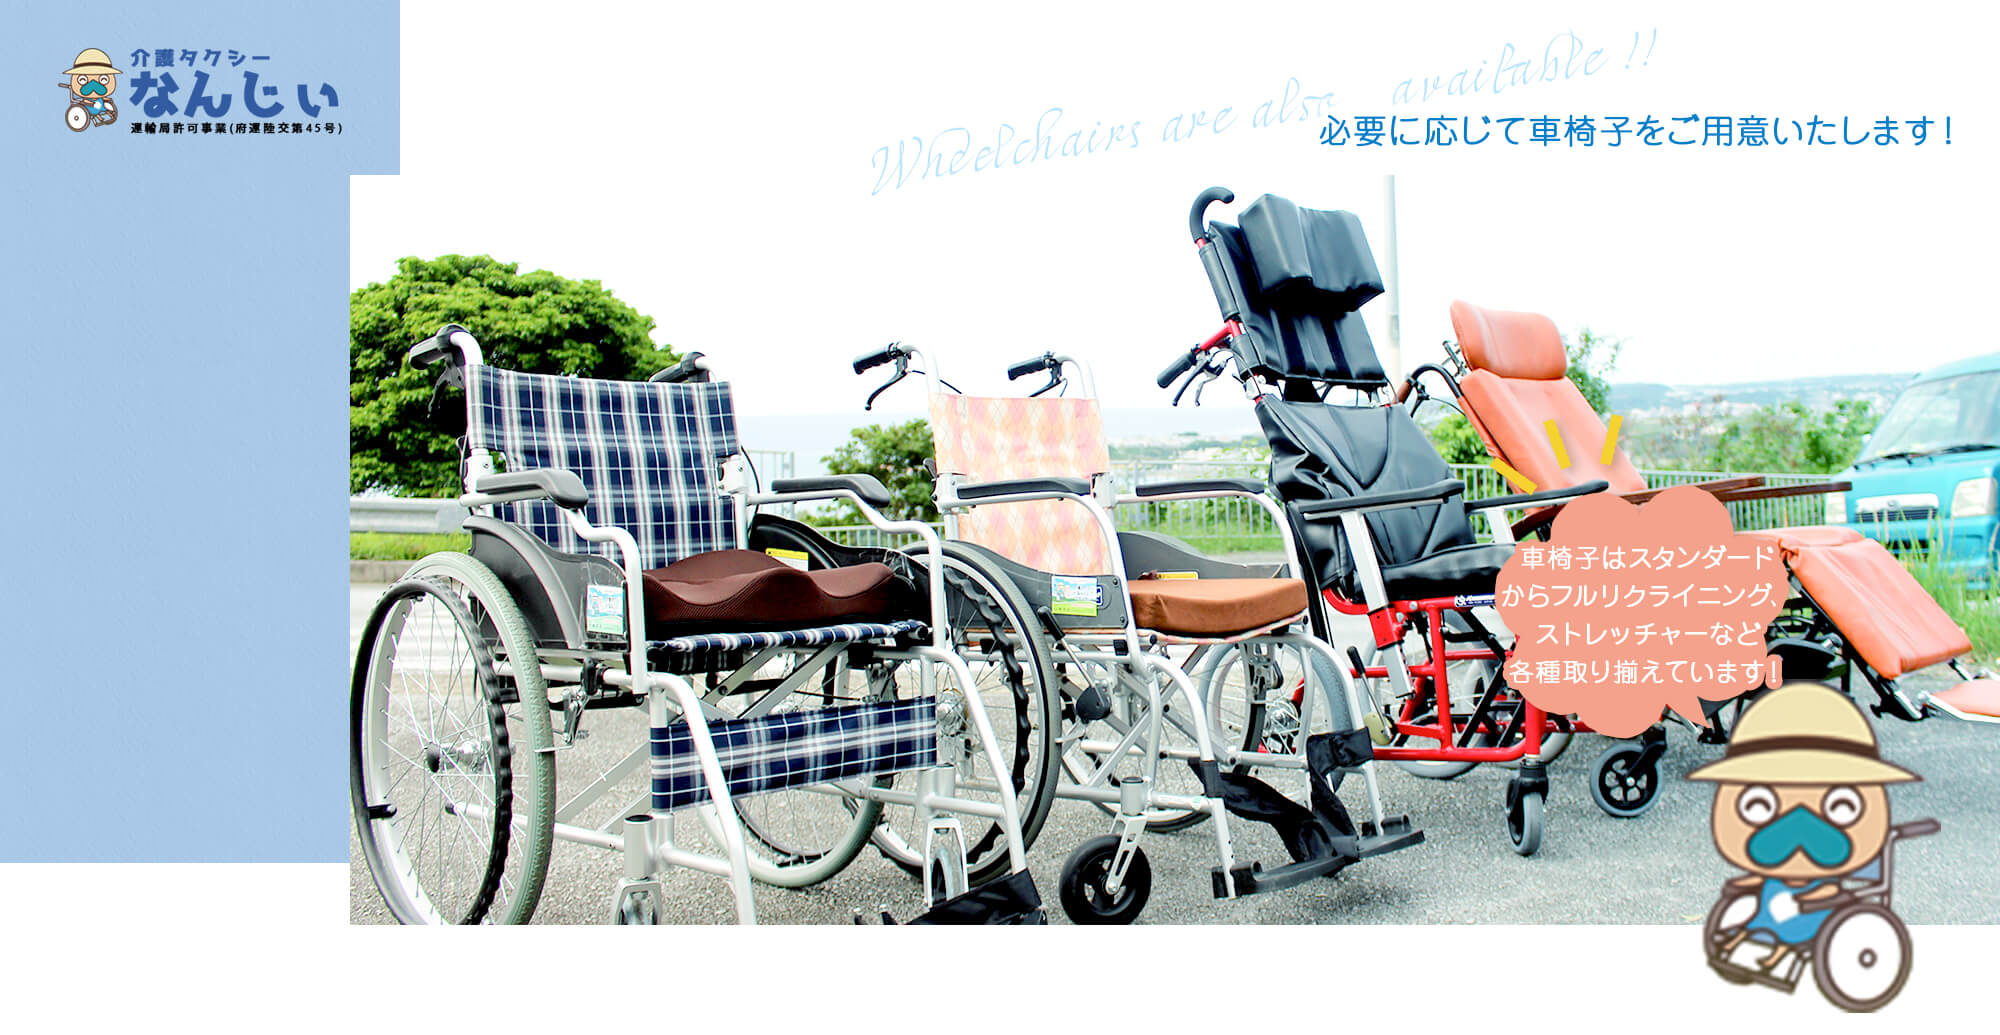 必要に応じて車椅子をご用意いたします！車椅子はスタンダードからフルリクライニング、ストレッチャーなど各種取り揃えています！